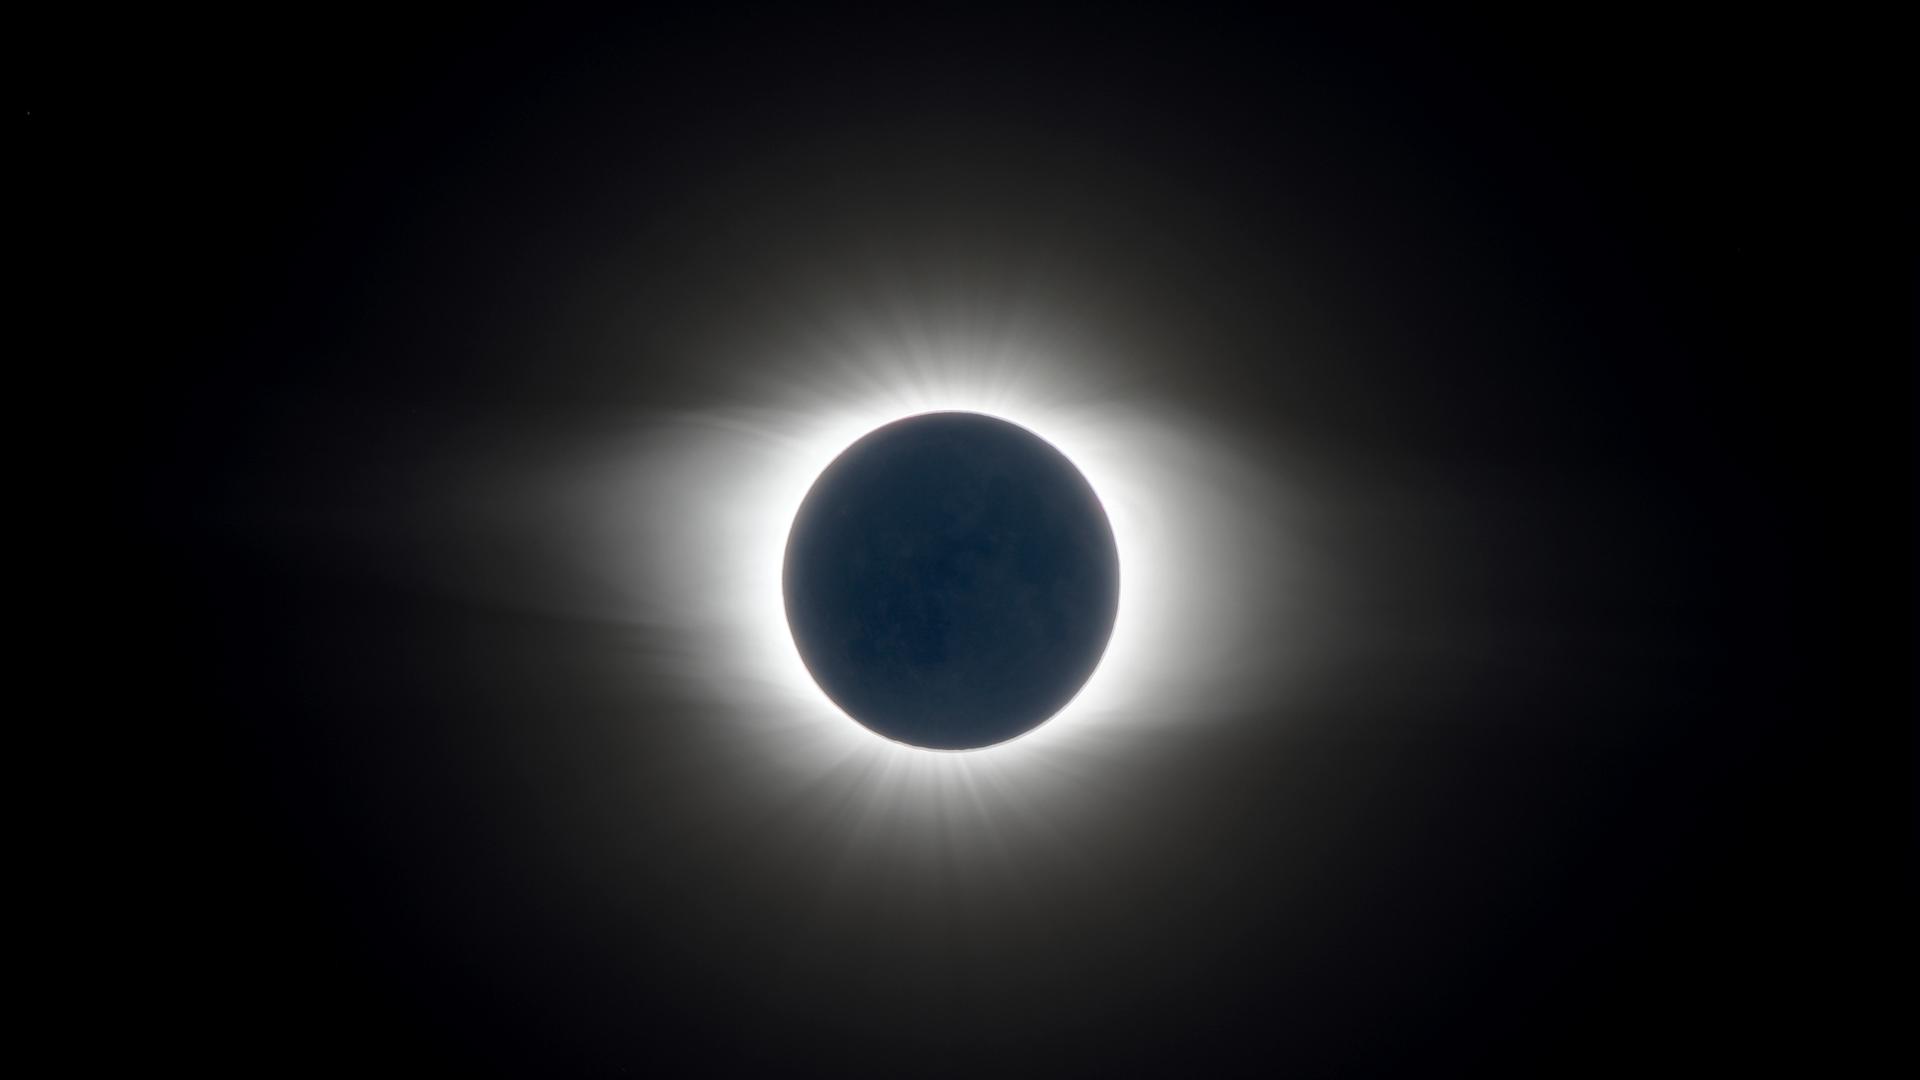 Aufnahme einer totalen Sonnenfinsternis bei der sich die Sonnenkorona zeigt, da der Mond die Sonne komplett bedeckt.